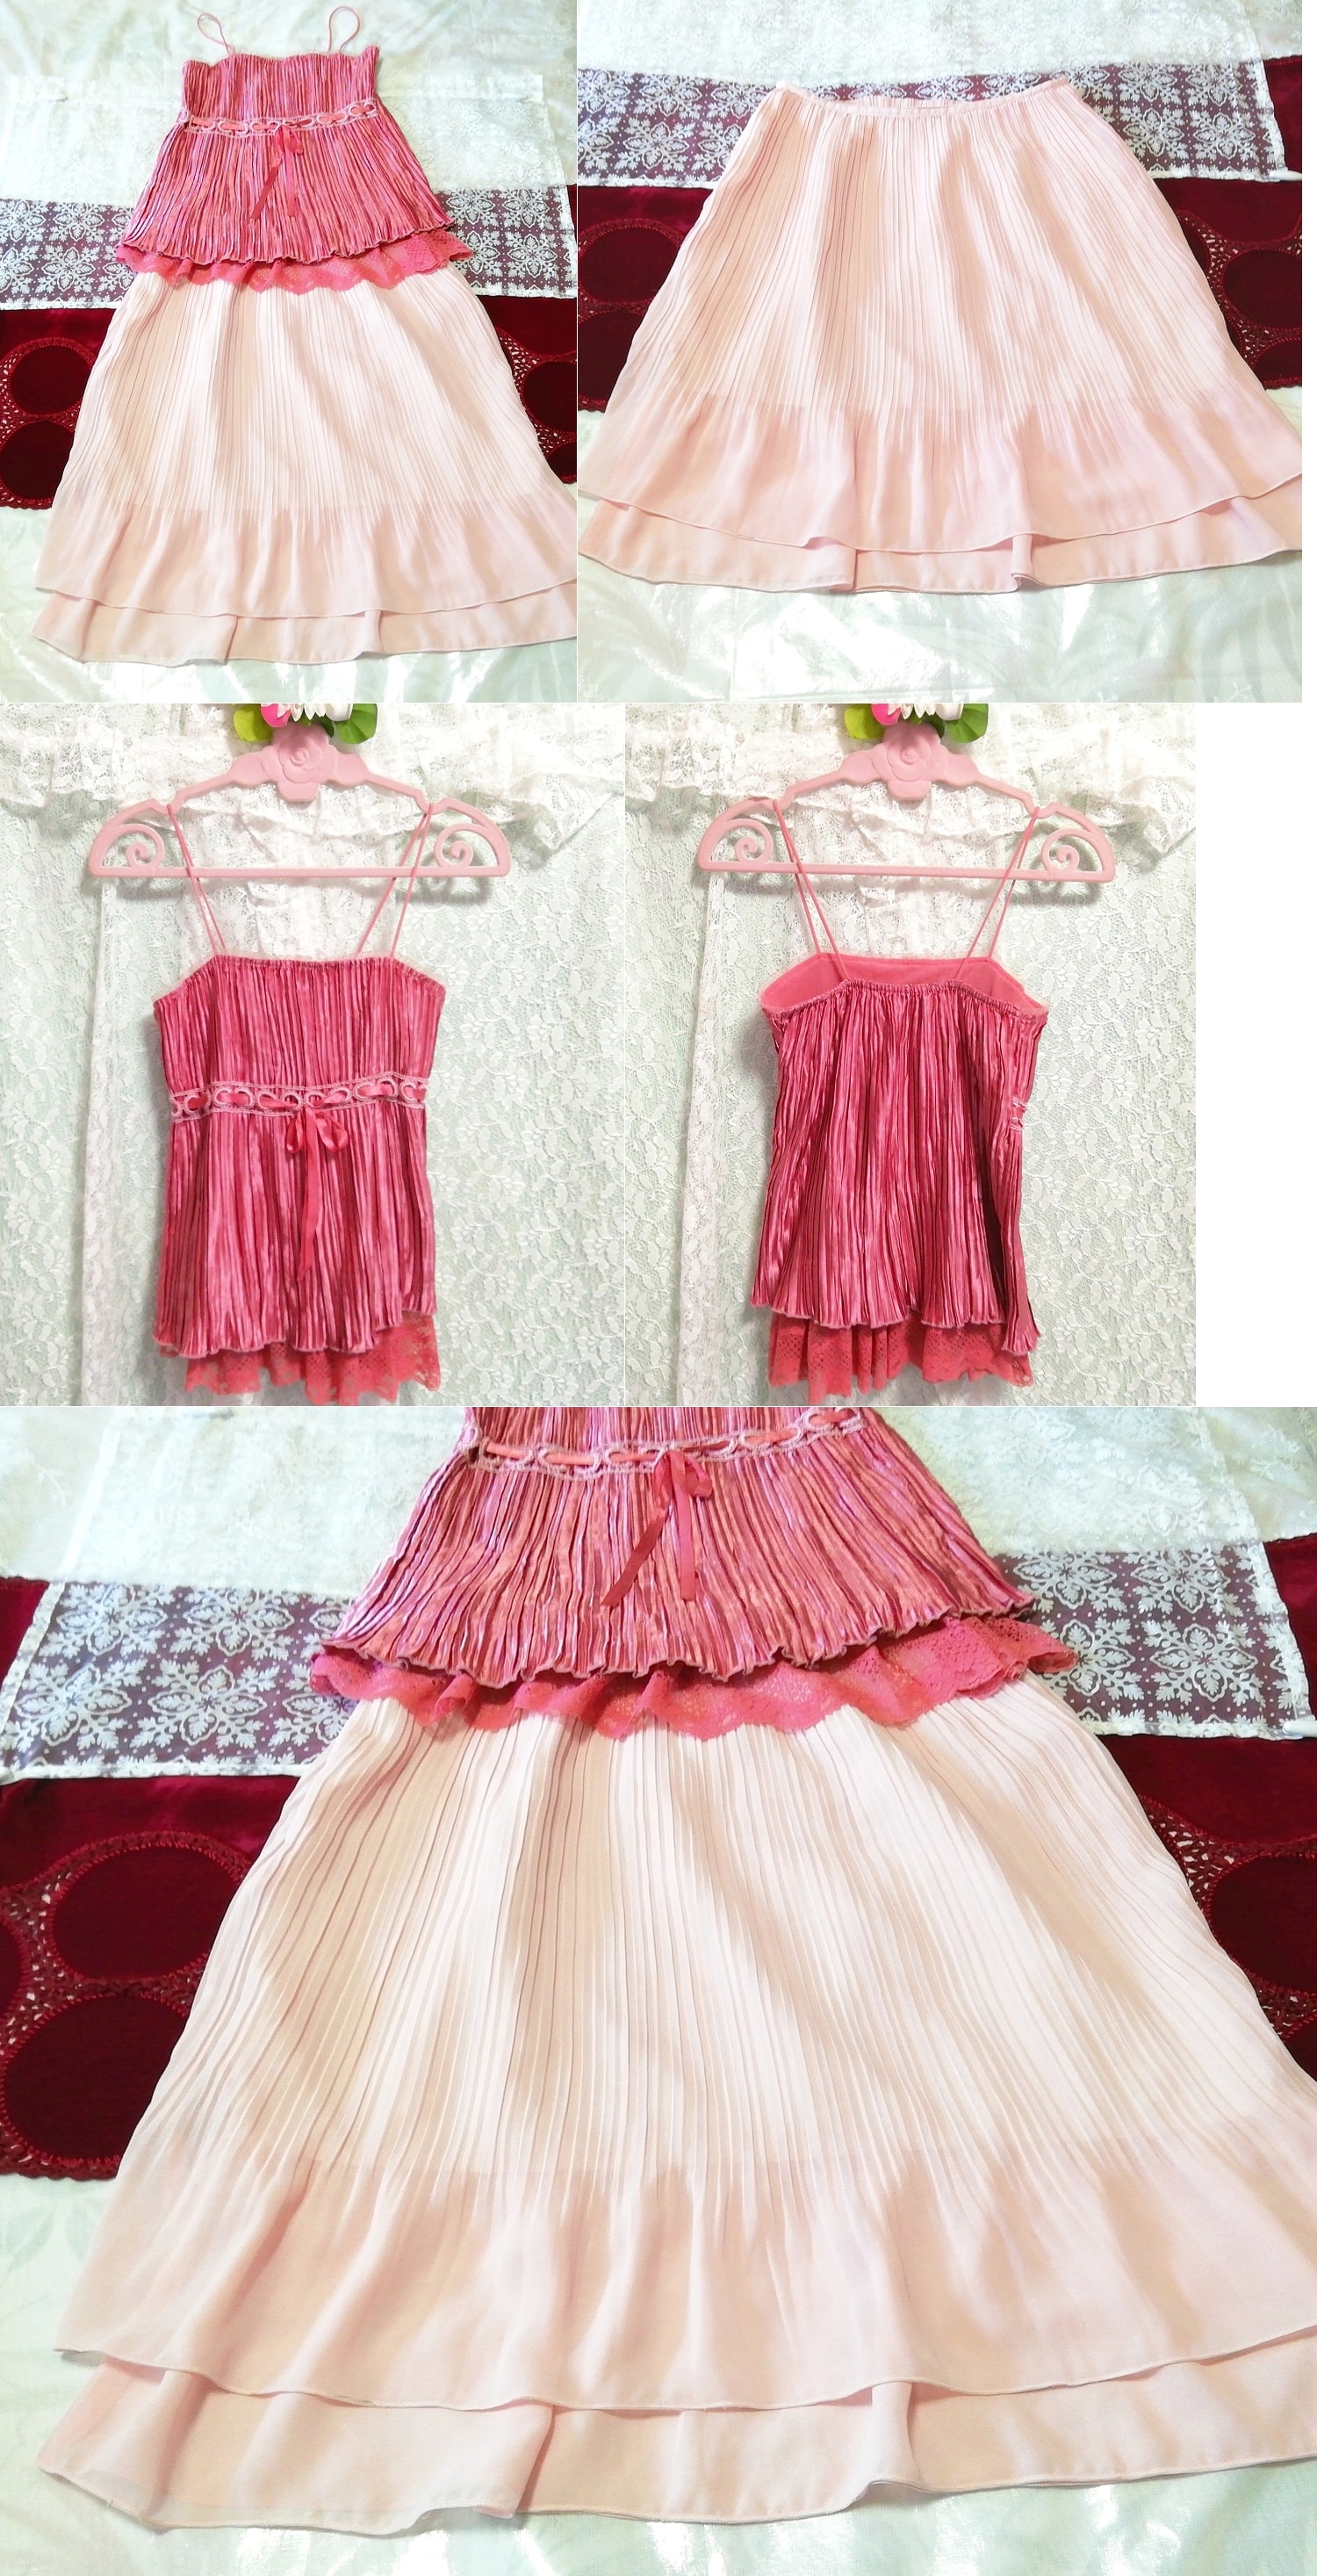 Camisón camisón de encaje satinado rosa falda plisada de gasa rosa 2P, moda, moda para damas, ropa de dormir, pijama